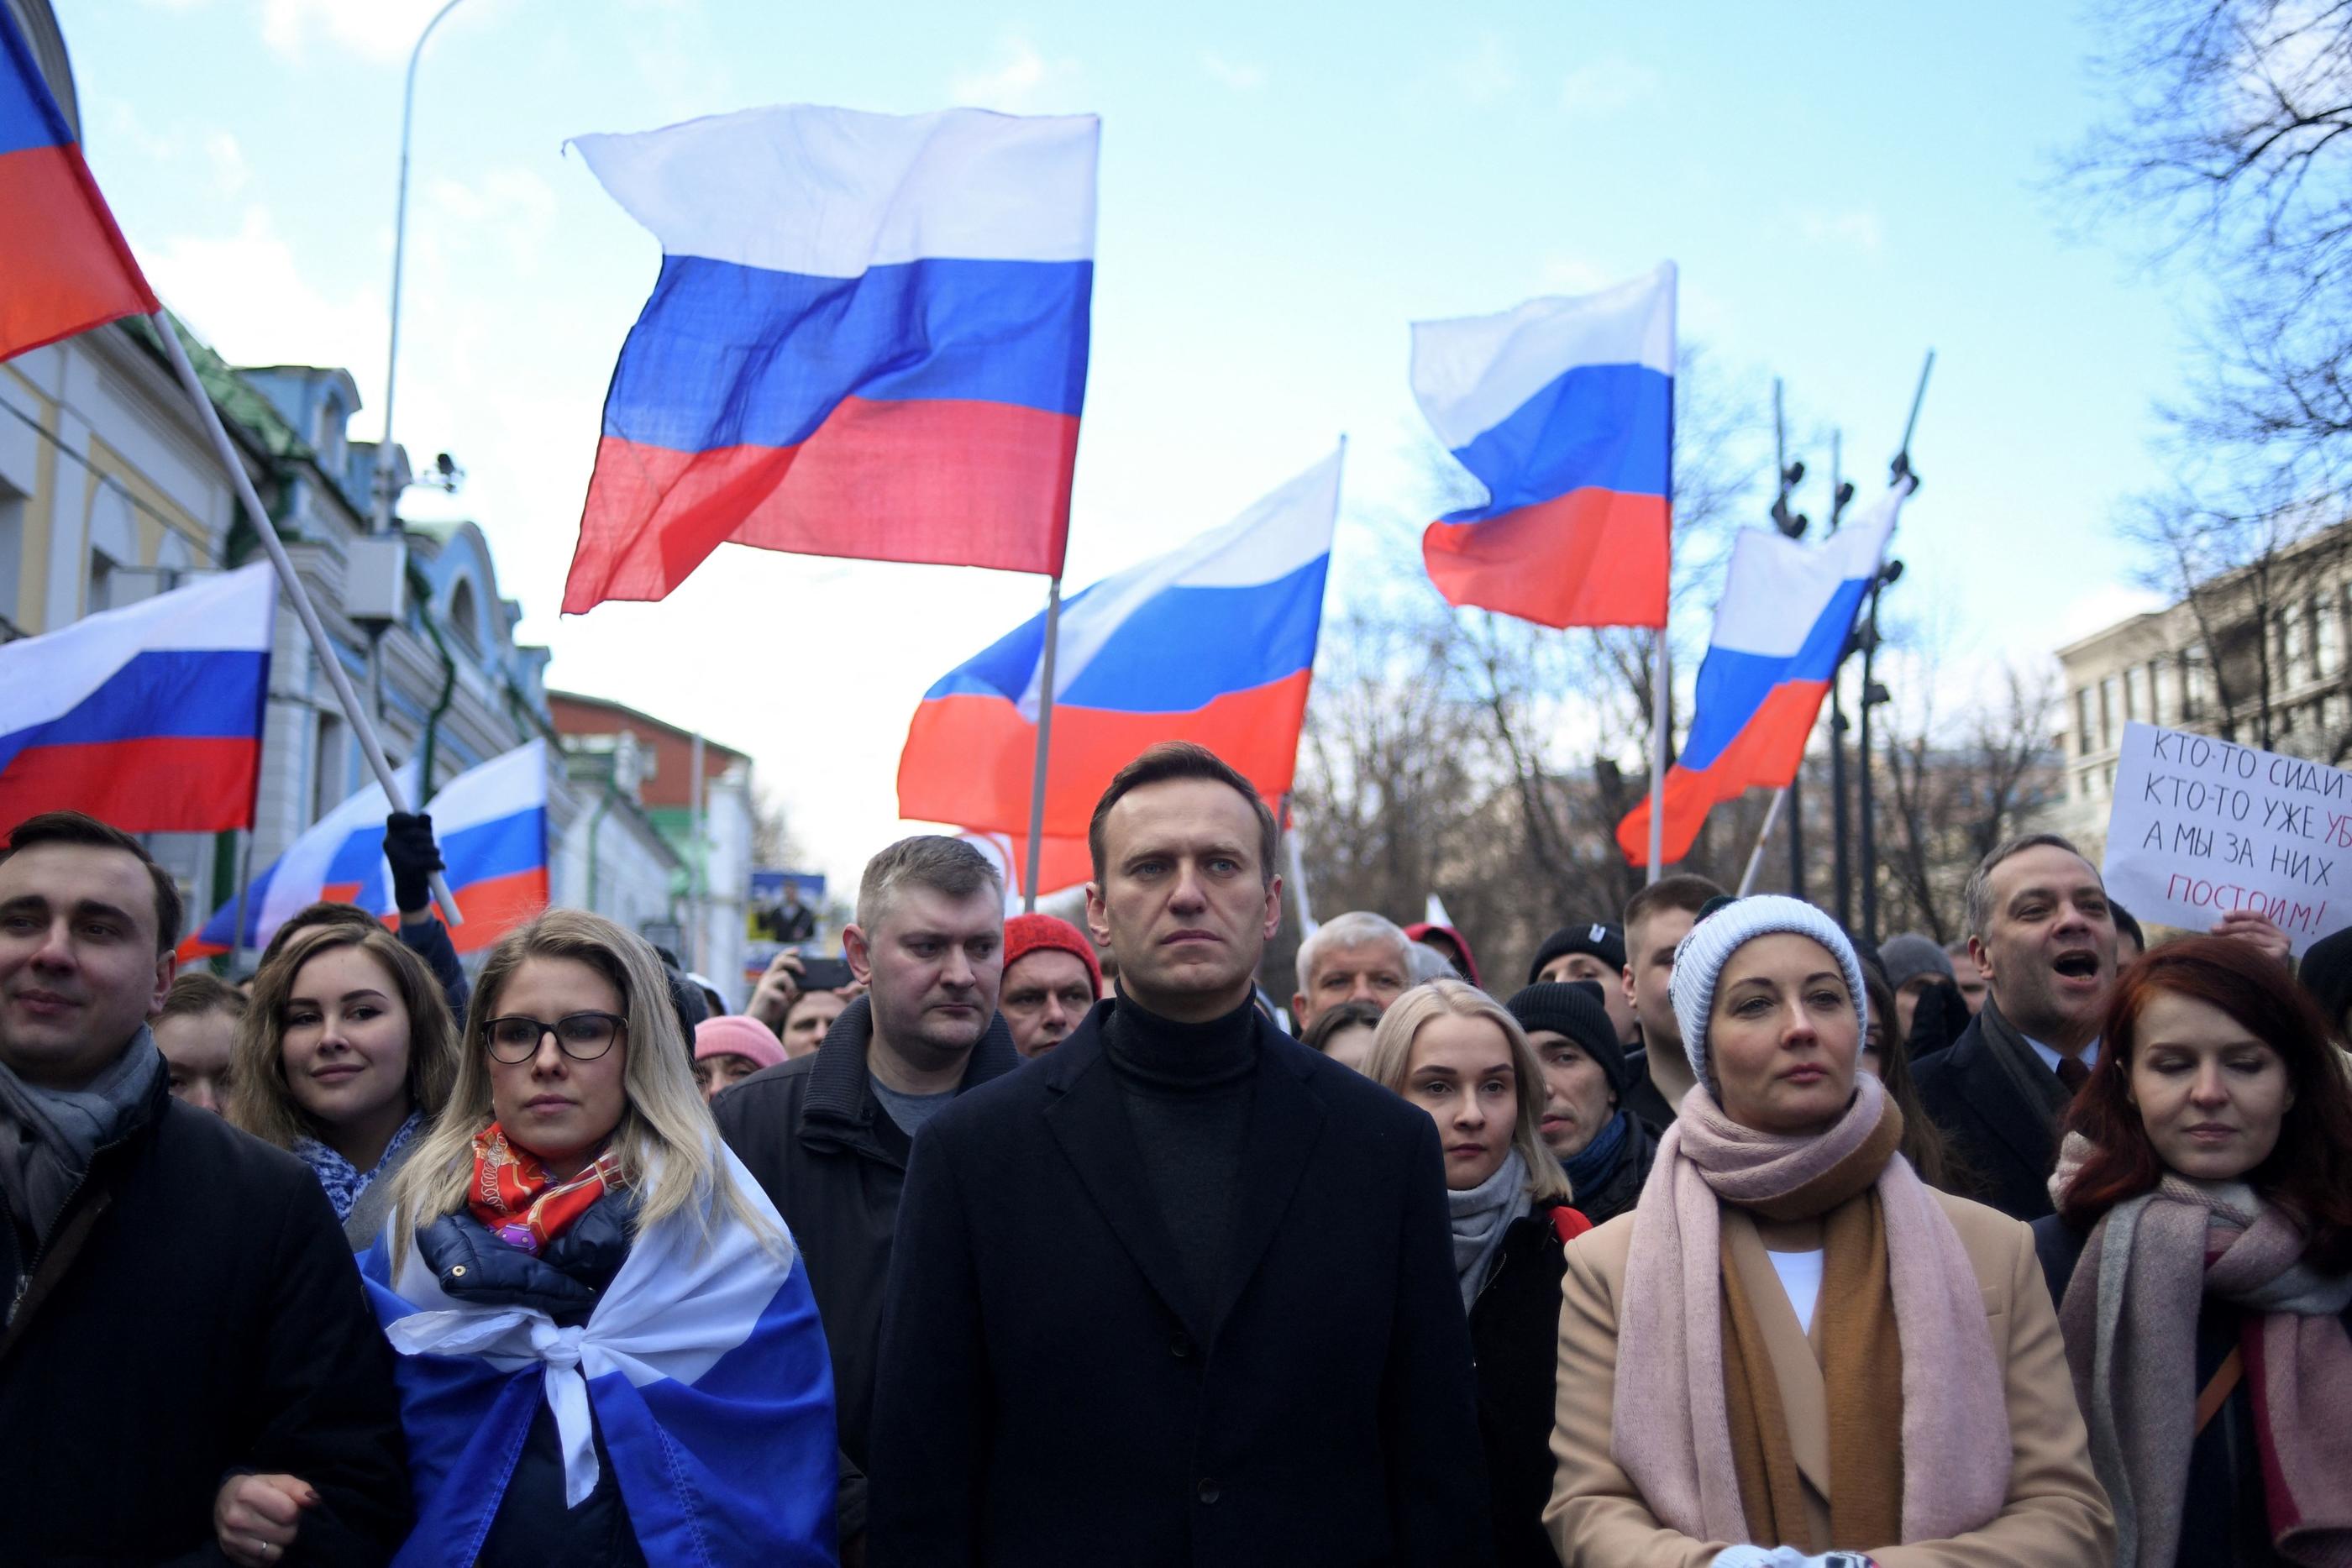 Alexeï Navalny, ici au côté de sa femme Yulia (à dr.) à Moscou en 2020, manifeste en hommage à l‘opposant russe Boris Nemtsov, assassiné en 2015. AFP/Kirill Kudryatsev